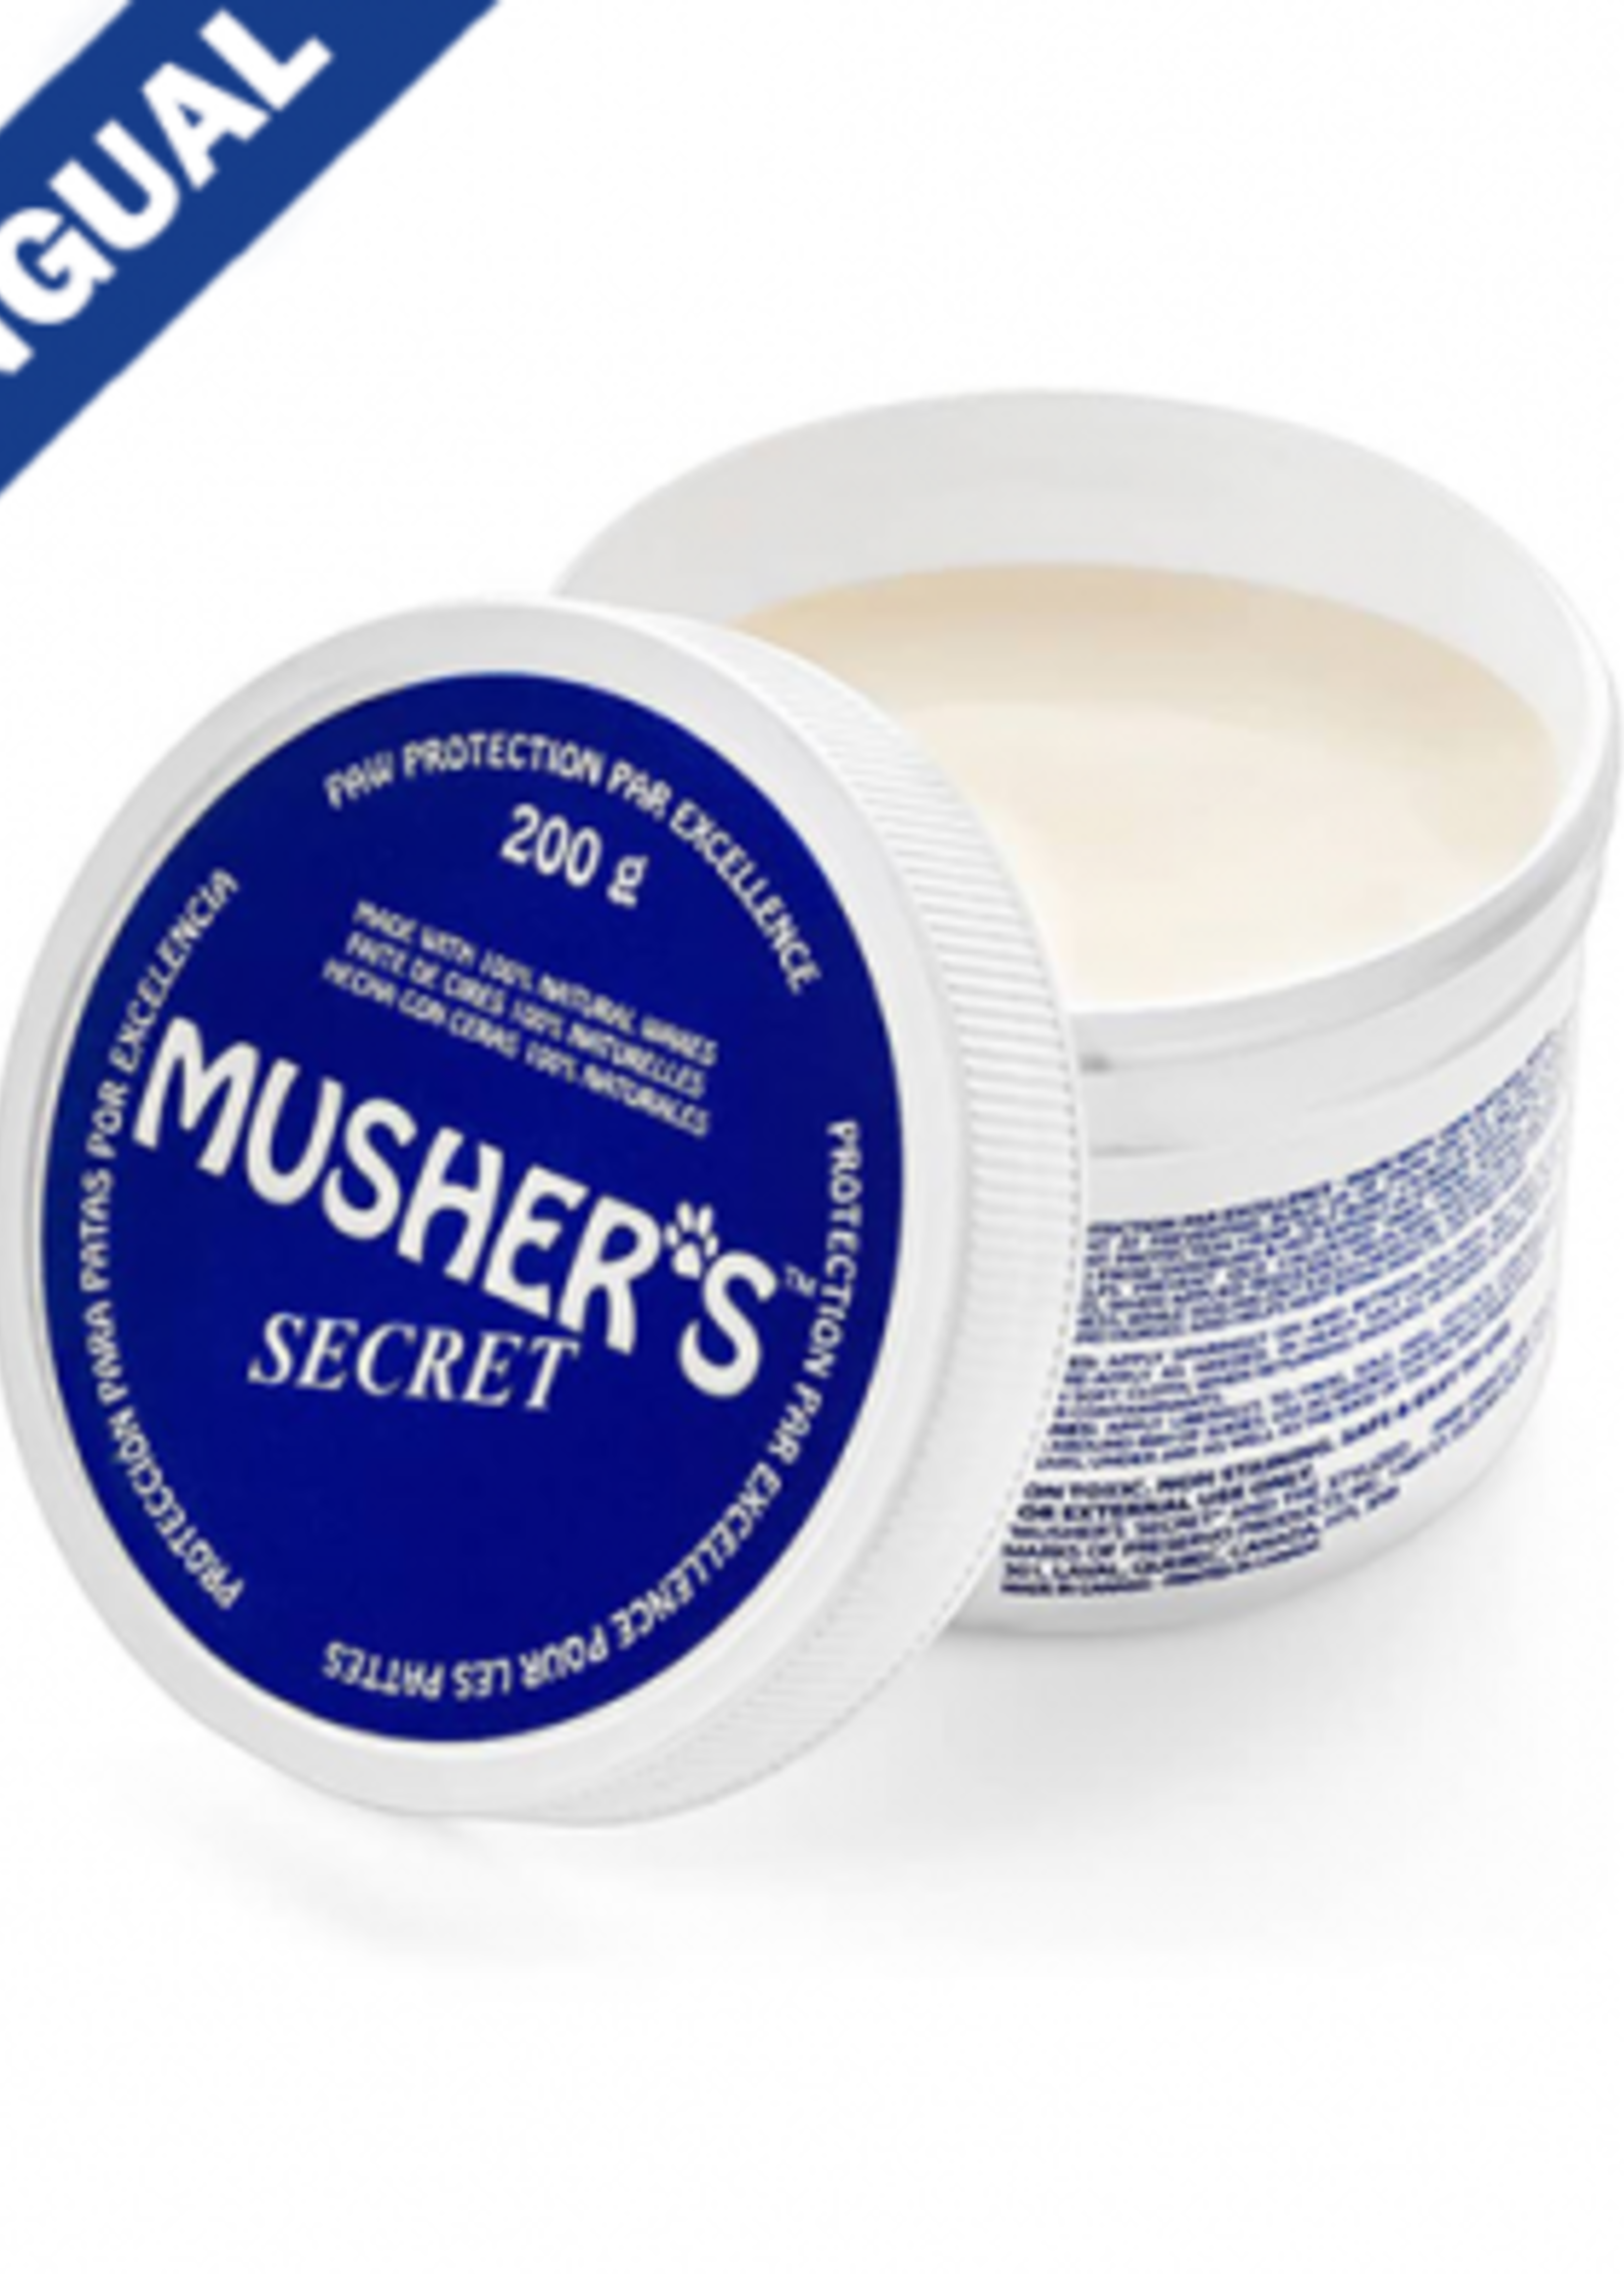 Musher's Secret Musher's Secret 200 g